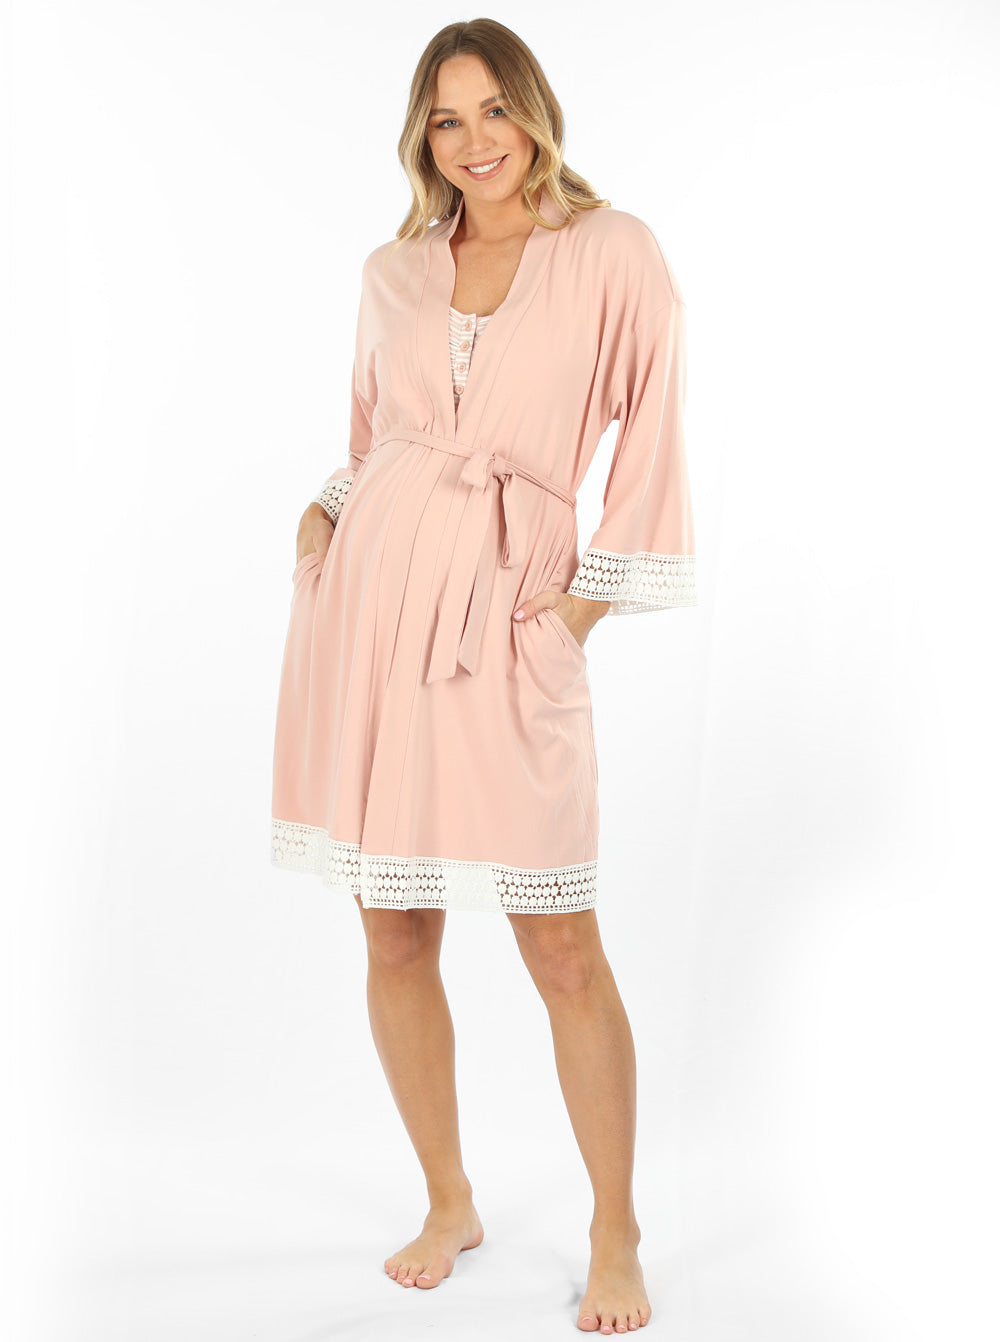 Maternity Gown / Hospital Gown / Nursing Gown, Floral – Wylde Reiyn